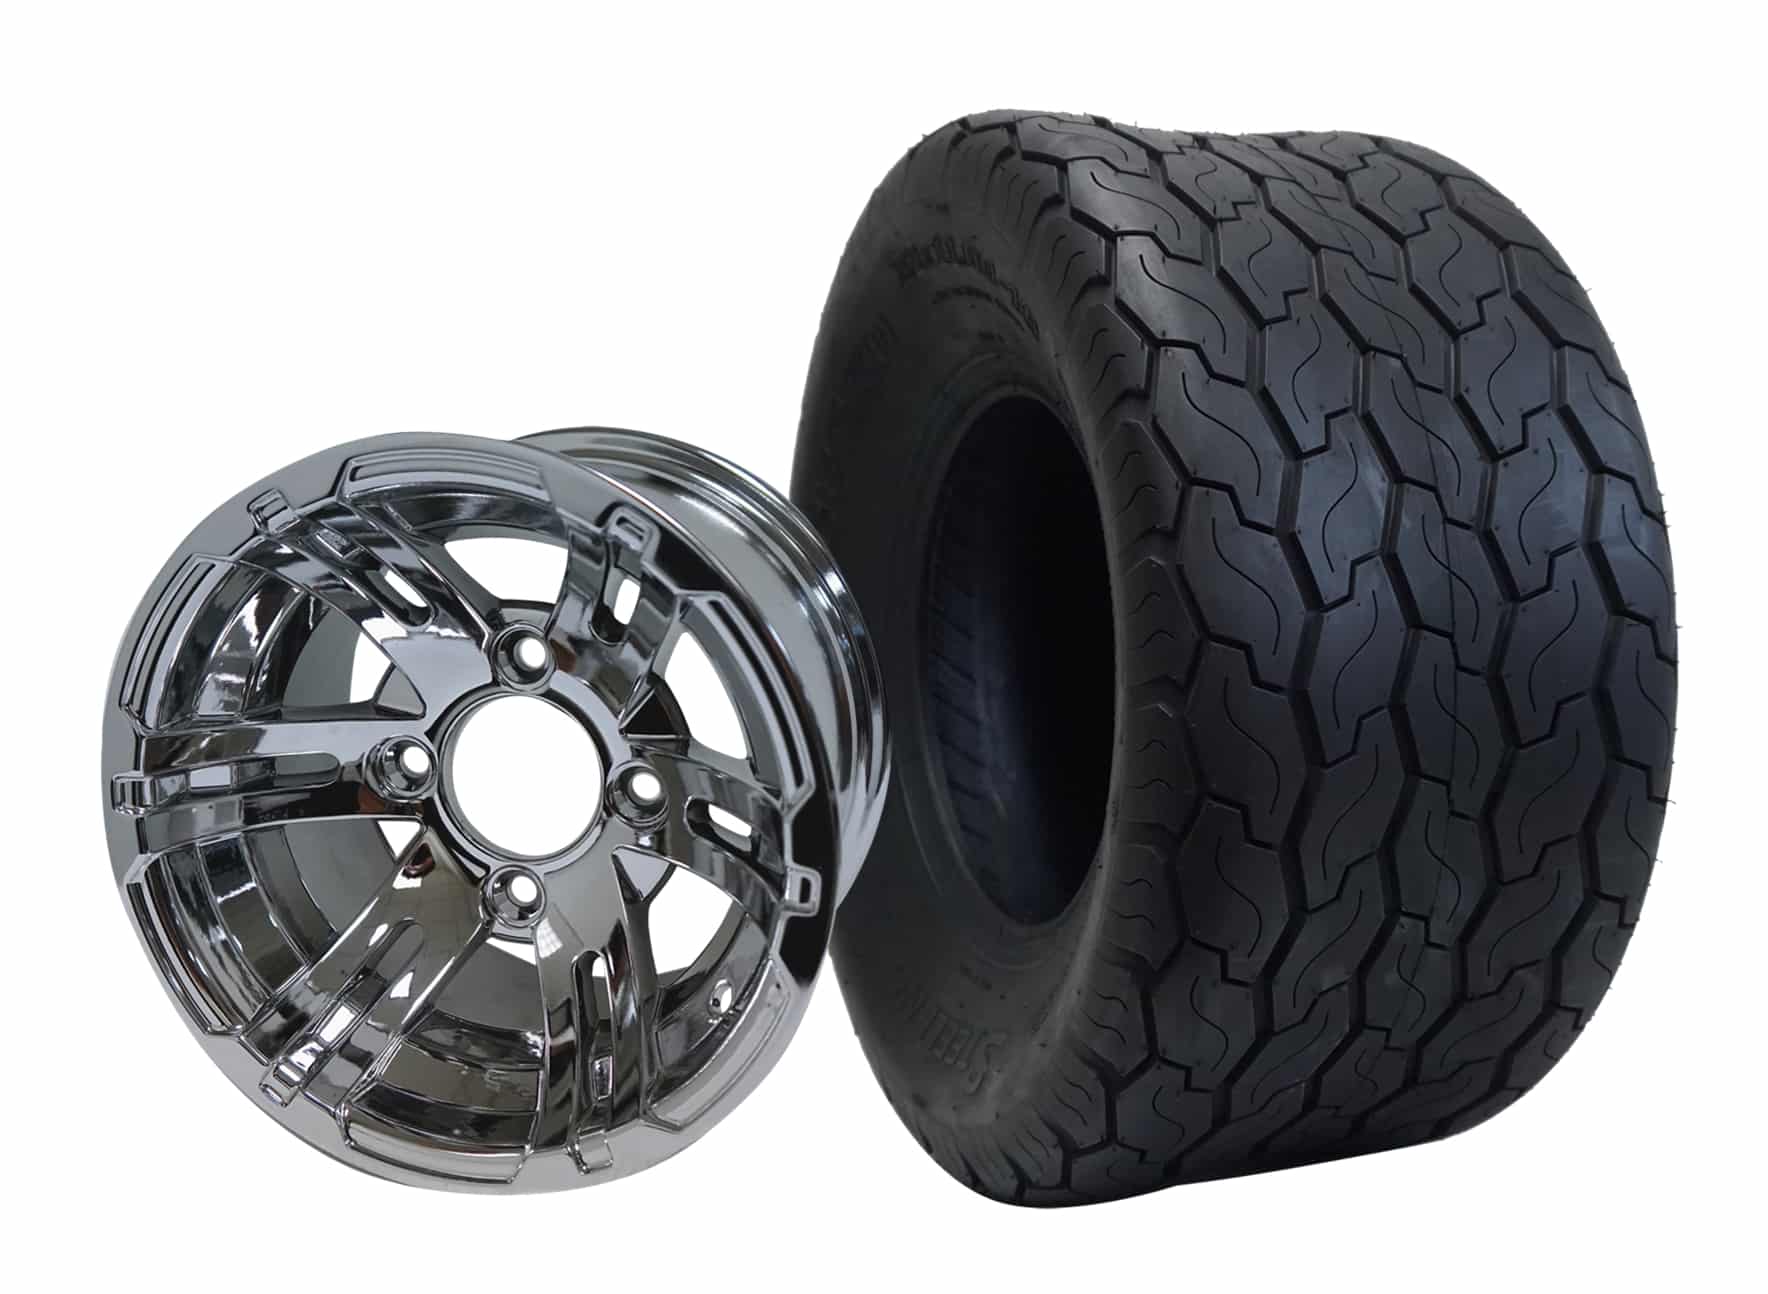 BNDL-TR1001-WH1002-CC0001-LN0004 10" Bulldog Chrome Wheel Aluminum Allow & 18"x9"-10" Gecko All Terrain Tire x4 With Lugnuts